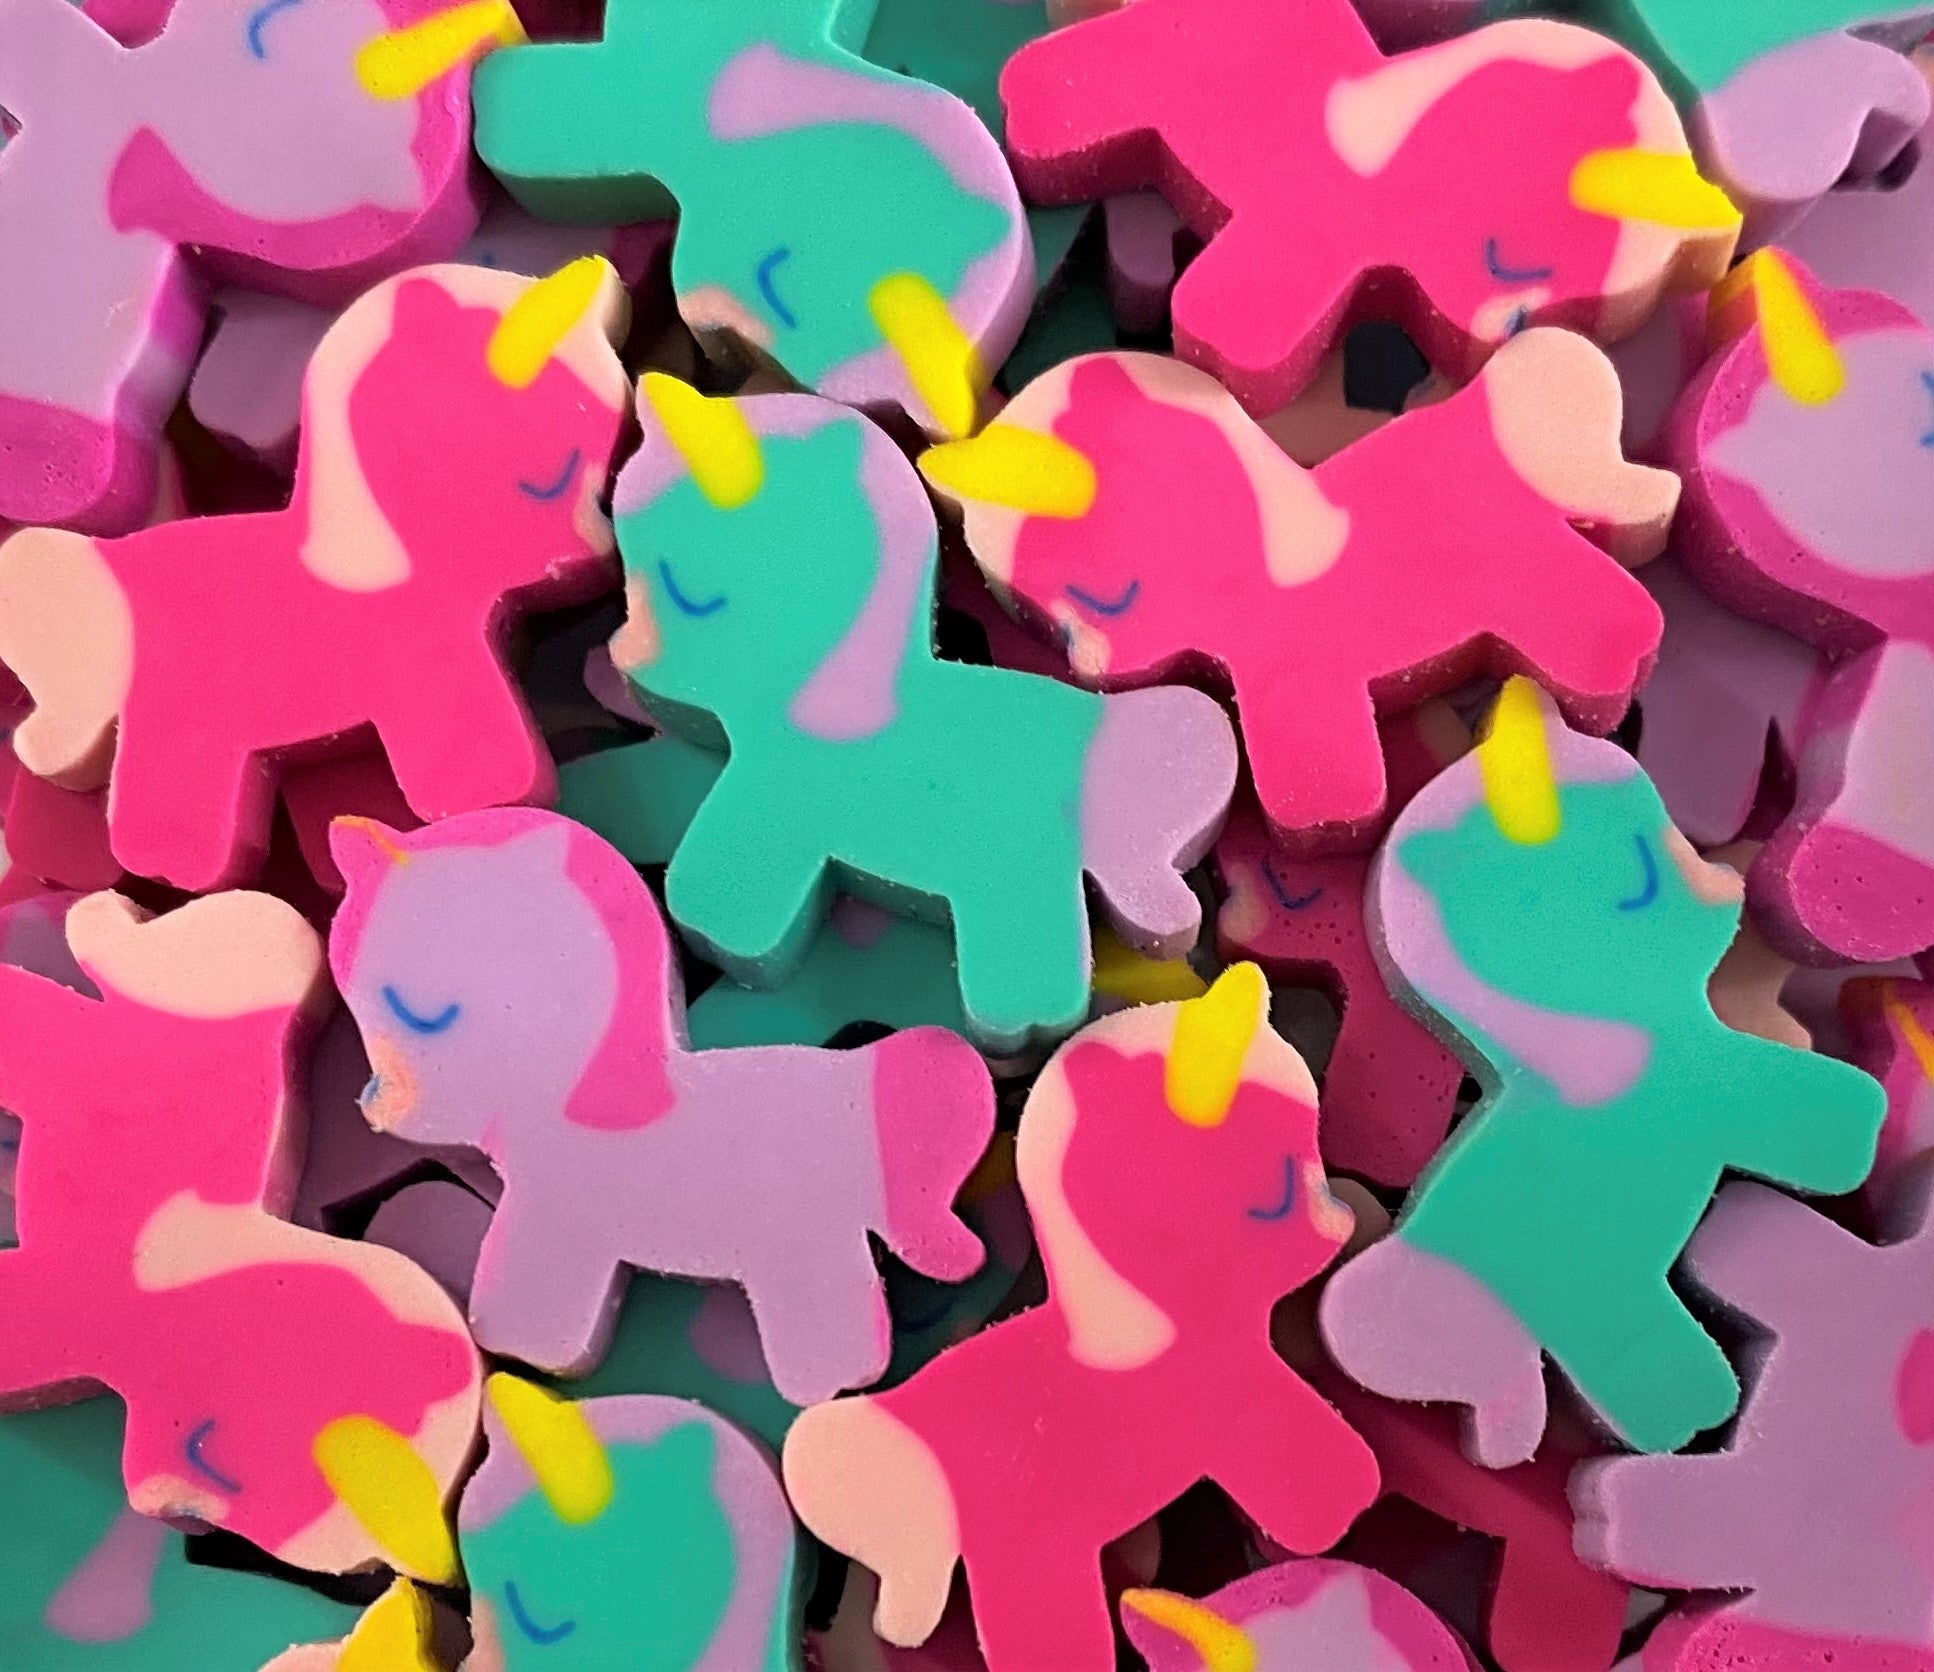 FunErasers-Mini Unicorn Erasers for Kids – FUN ERASERS